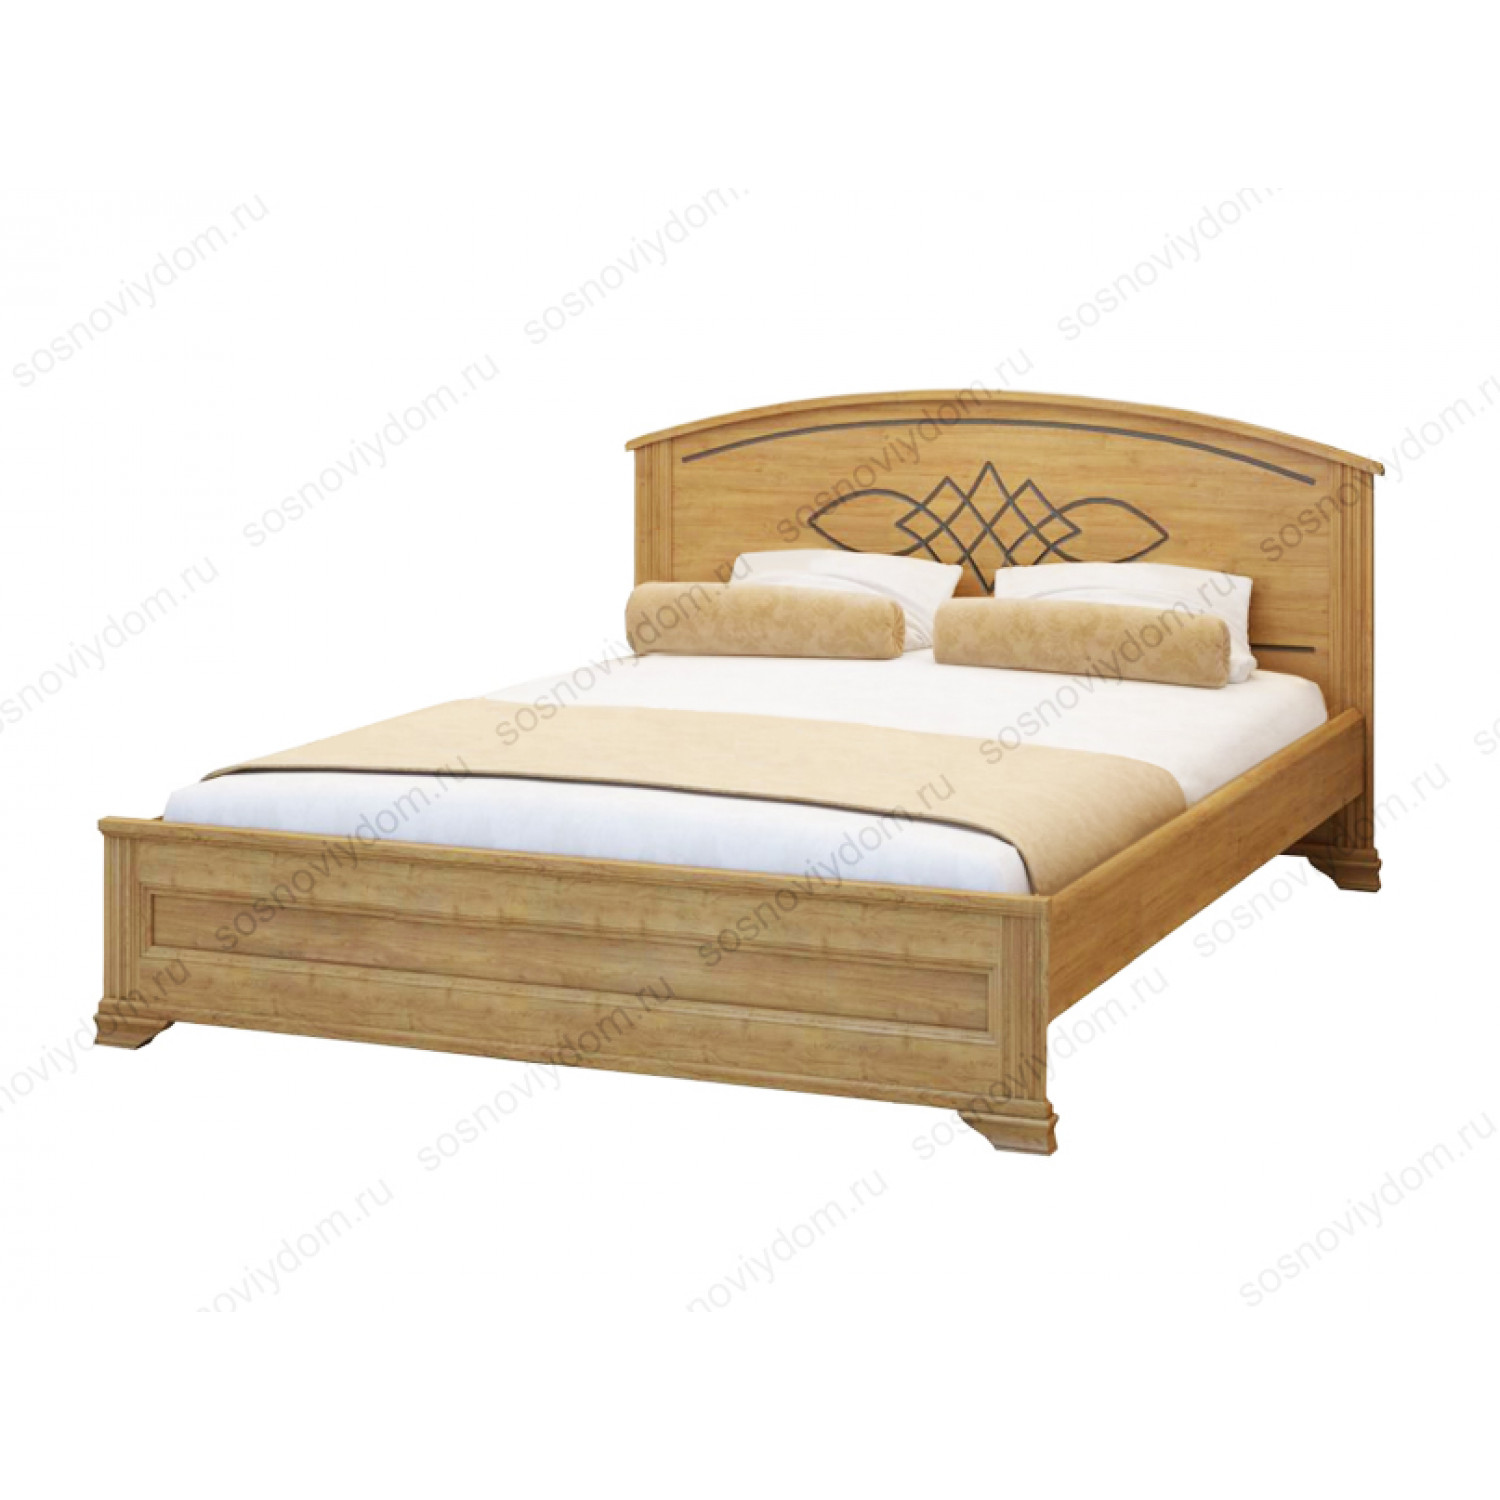 Купить деревянную кровать недорого. Кровать двуспальная Шатура мебель 160х200.